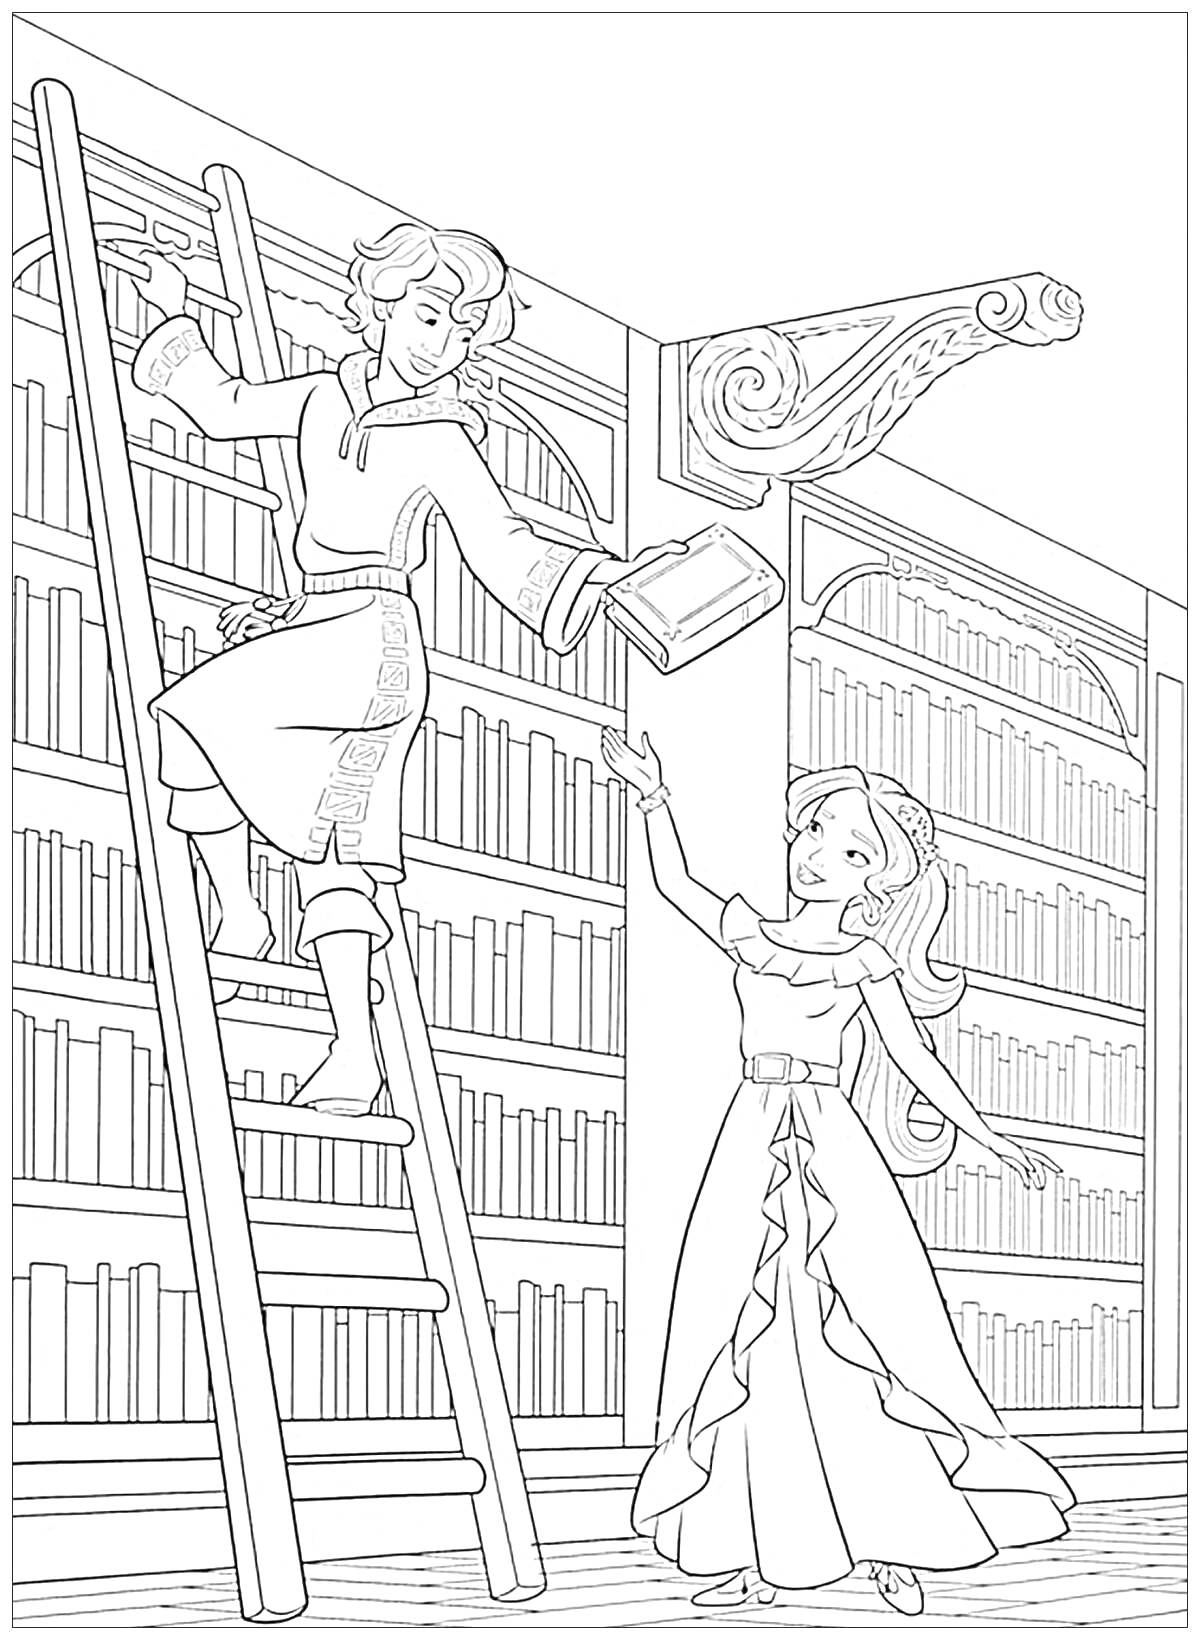 Раскраска Парень на лестнице передаёт книгу девушке в длинном платье в библиотеке